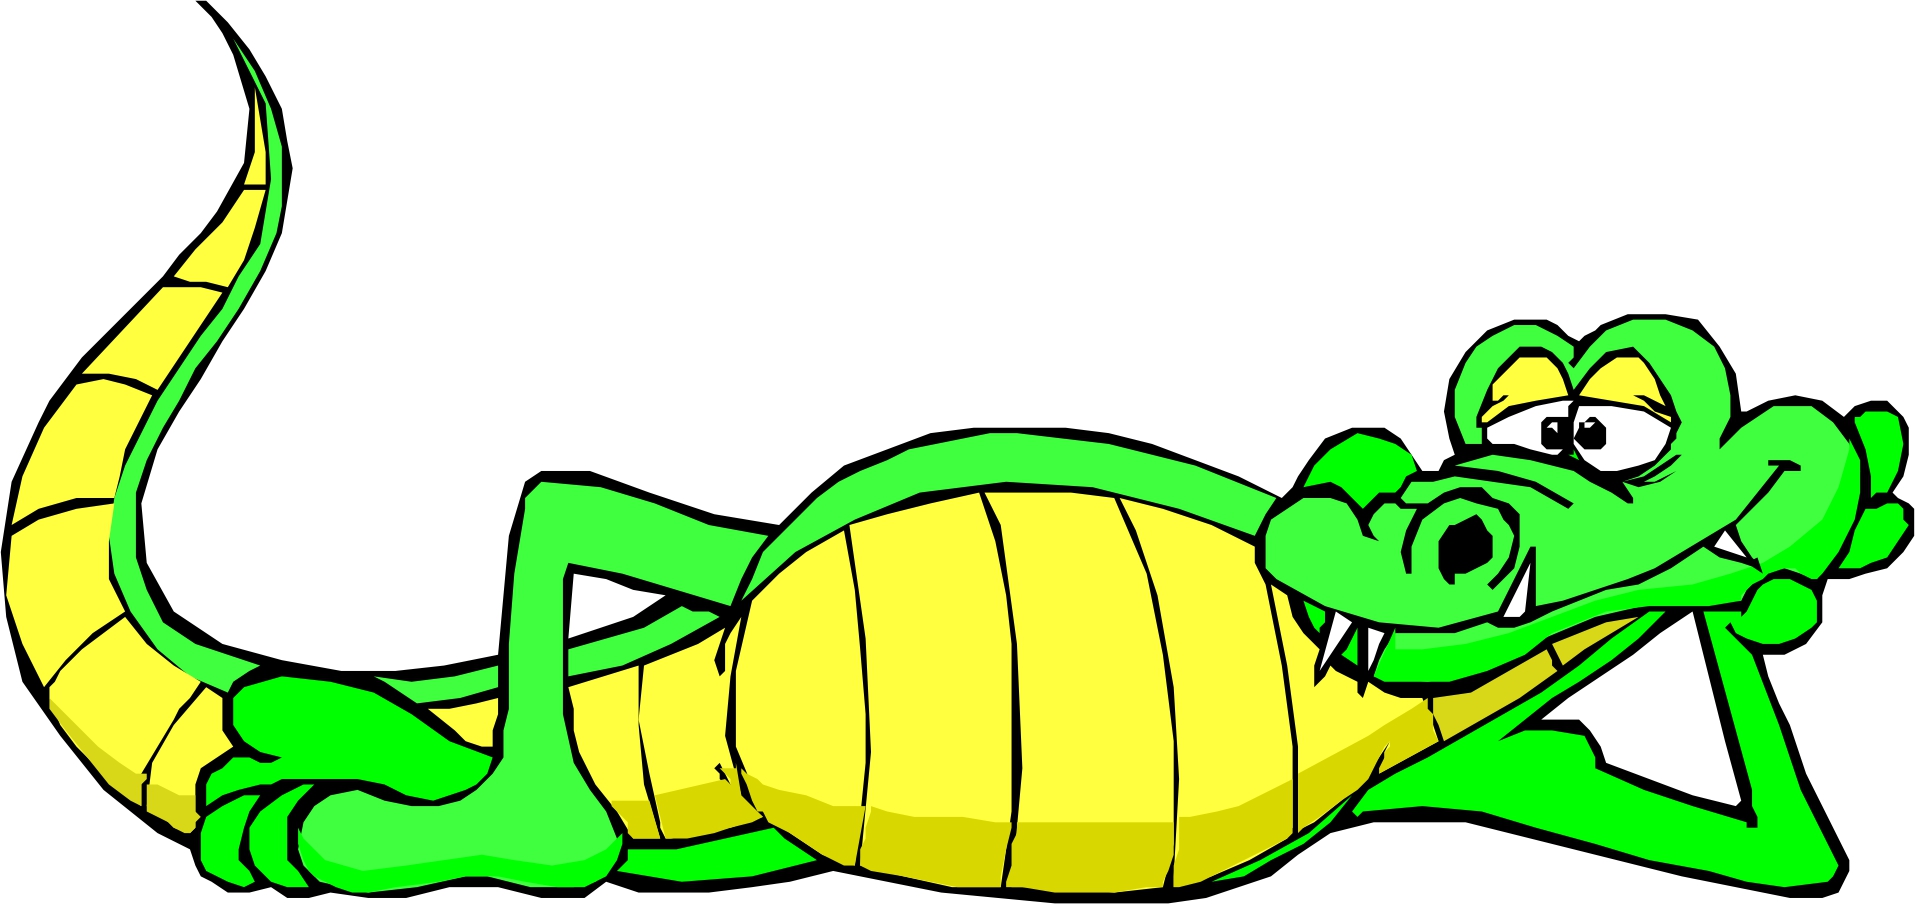 Funny alligator clip art crocodile pictures 5 4